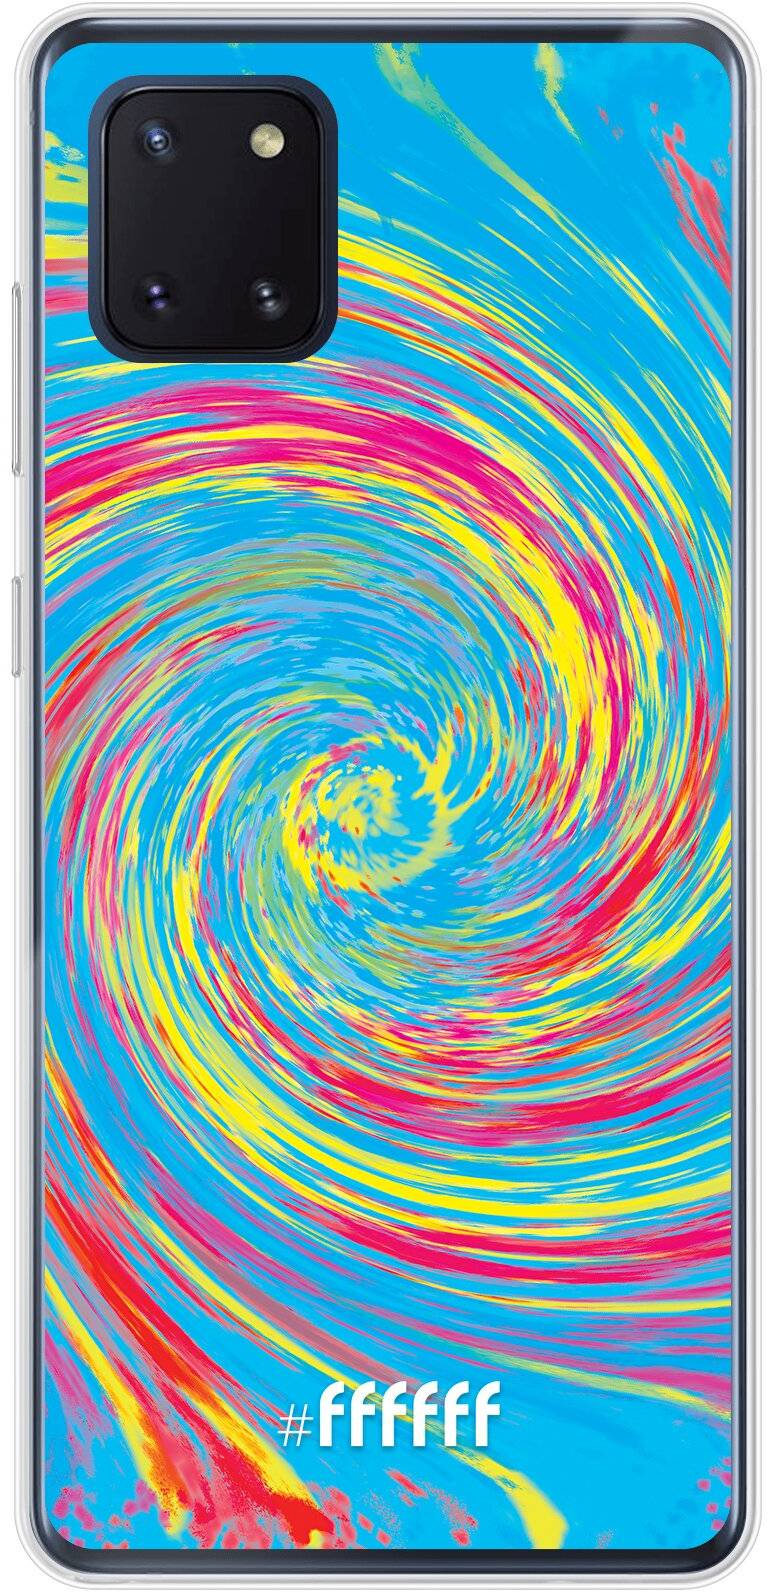 Swirl Tie Dye Galaxy Note 10 Lite